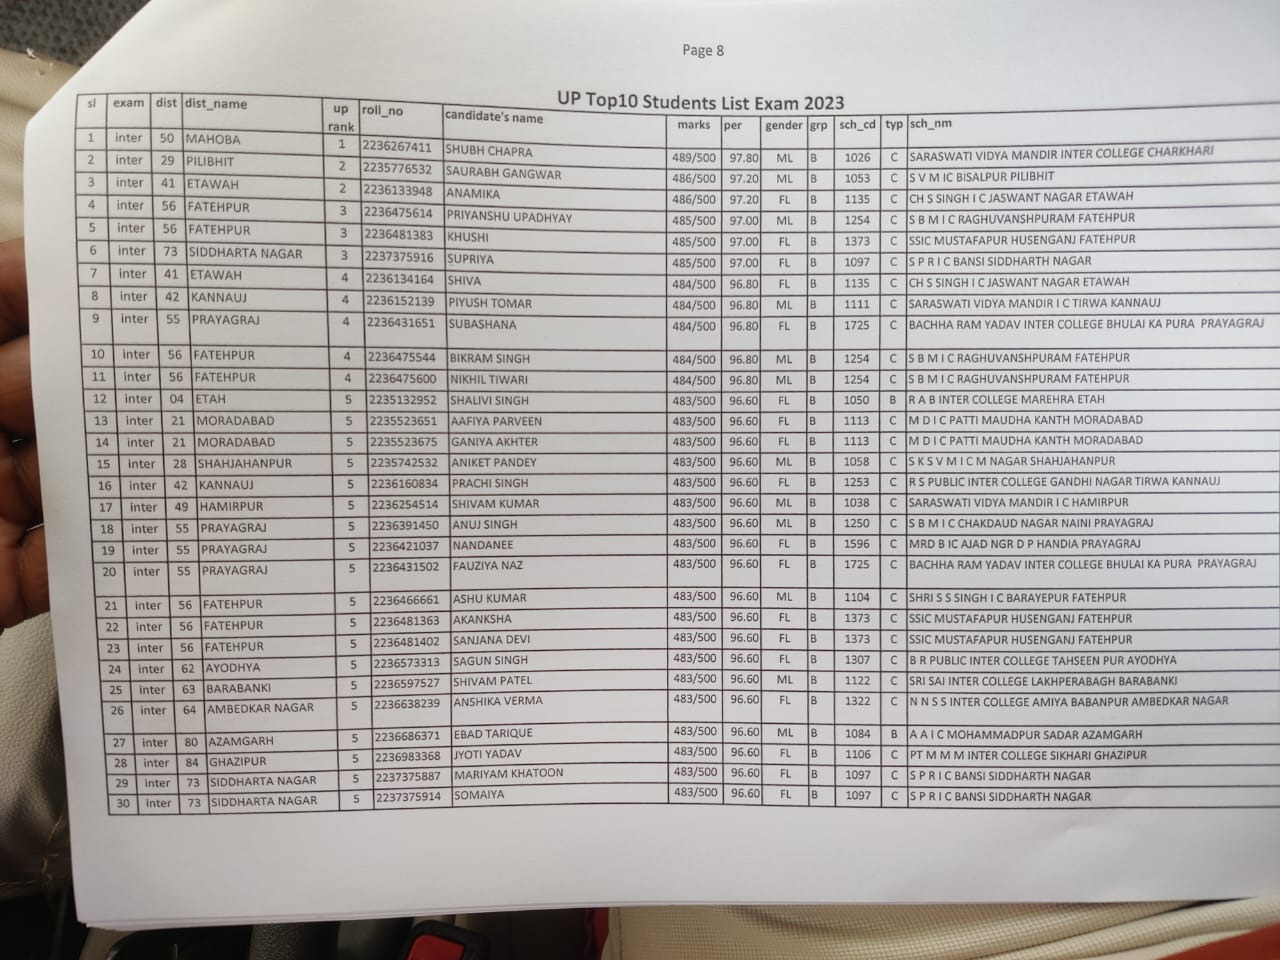 Up Board Result 2023 Live: यूपी बोर्ड 10वीं 12वीं का रिजल्ट जारी, यहां देखें टॉपर्स सूची और डिटेल्स